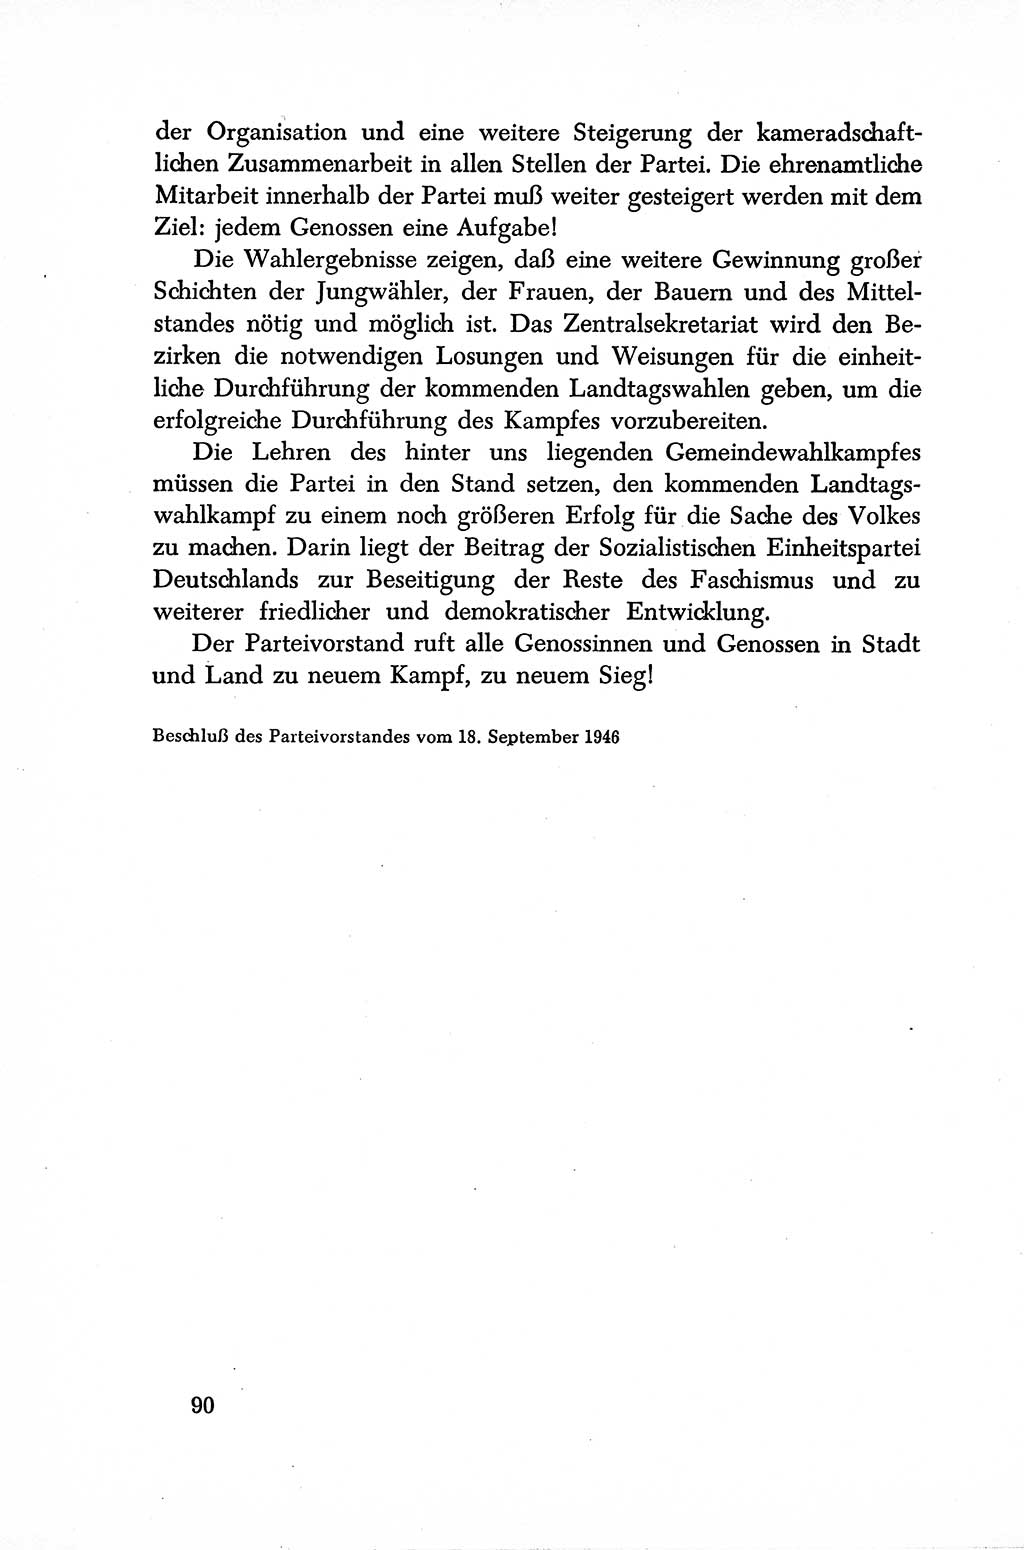 Dokumente der Sozialistischen Einheitspartei Deutschlands (SED) [Sowjetische Besatzungszone (SBZ) Deutschlands] 1946-1948, Seite 90 (Dok. SED SBZ Dtl. 1946-1948, S. 90)